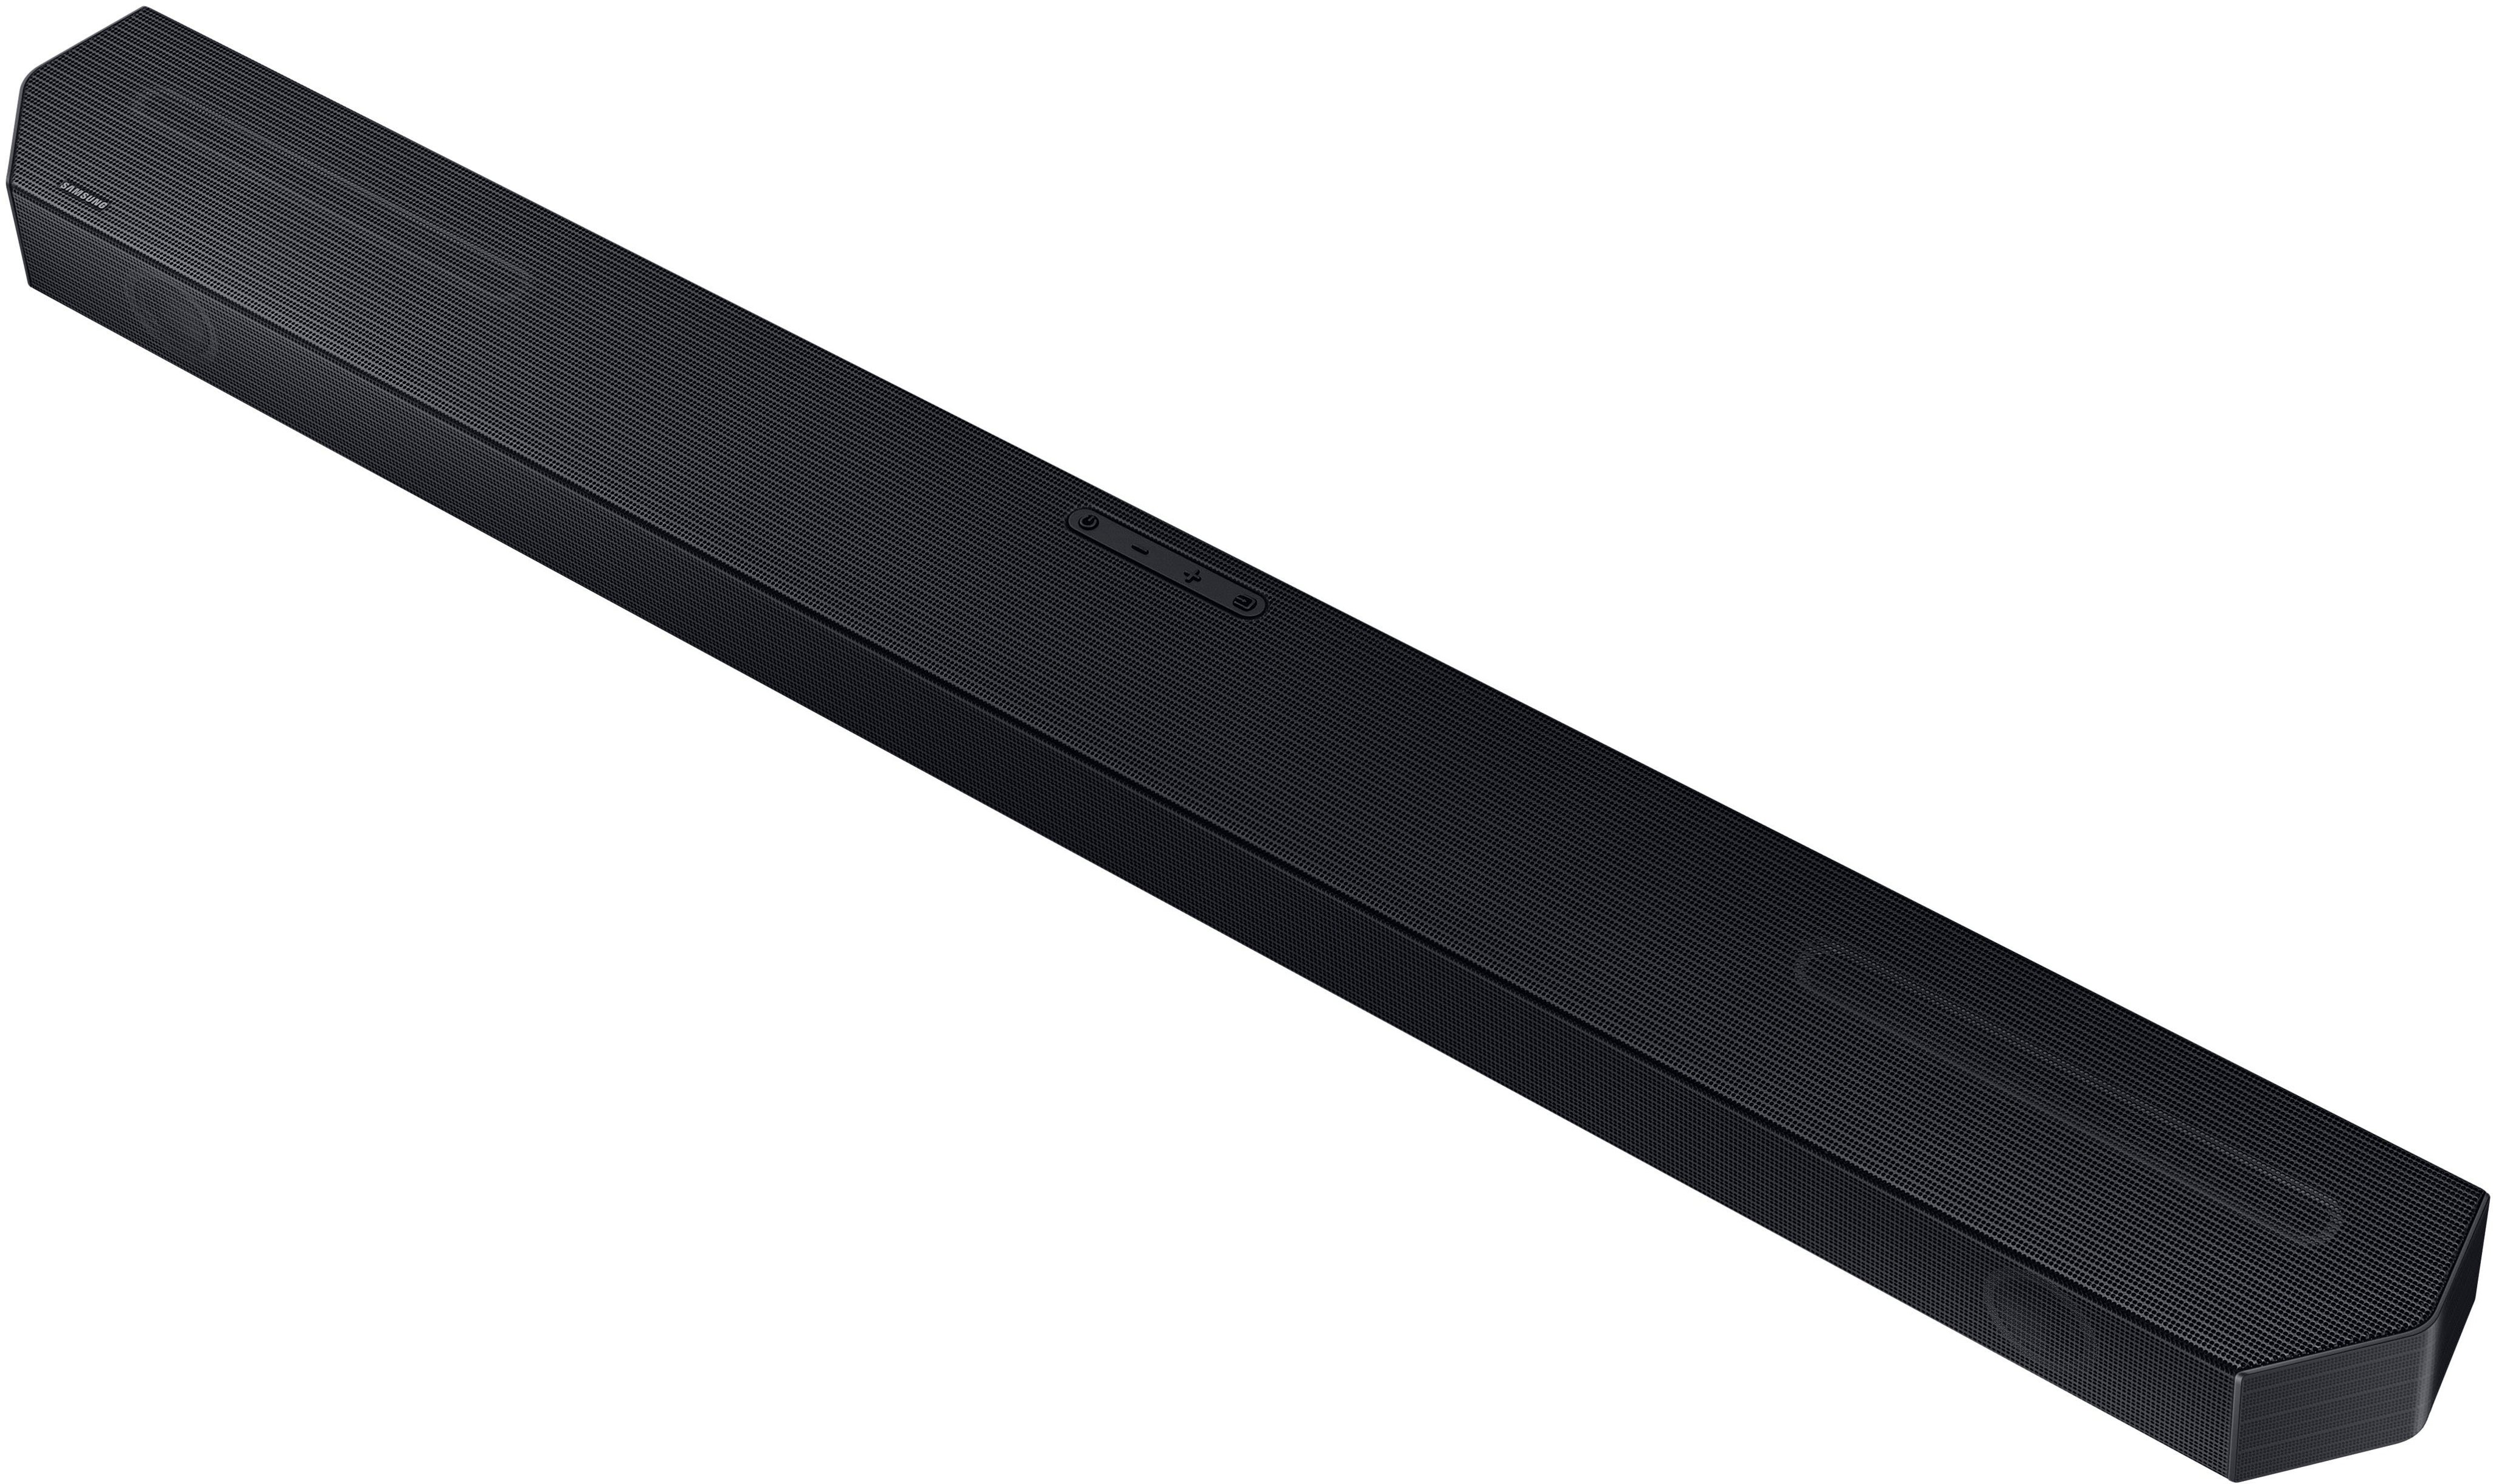 Black Best Q-series Atmos Titan Soundbar ch Buy HW-Q600C 3.1.2 w/Q-Symphony Dolby - Samsung